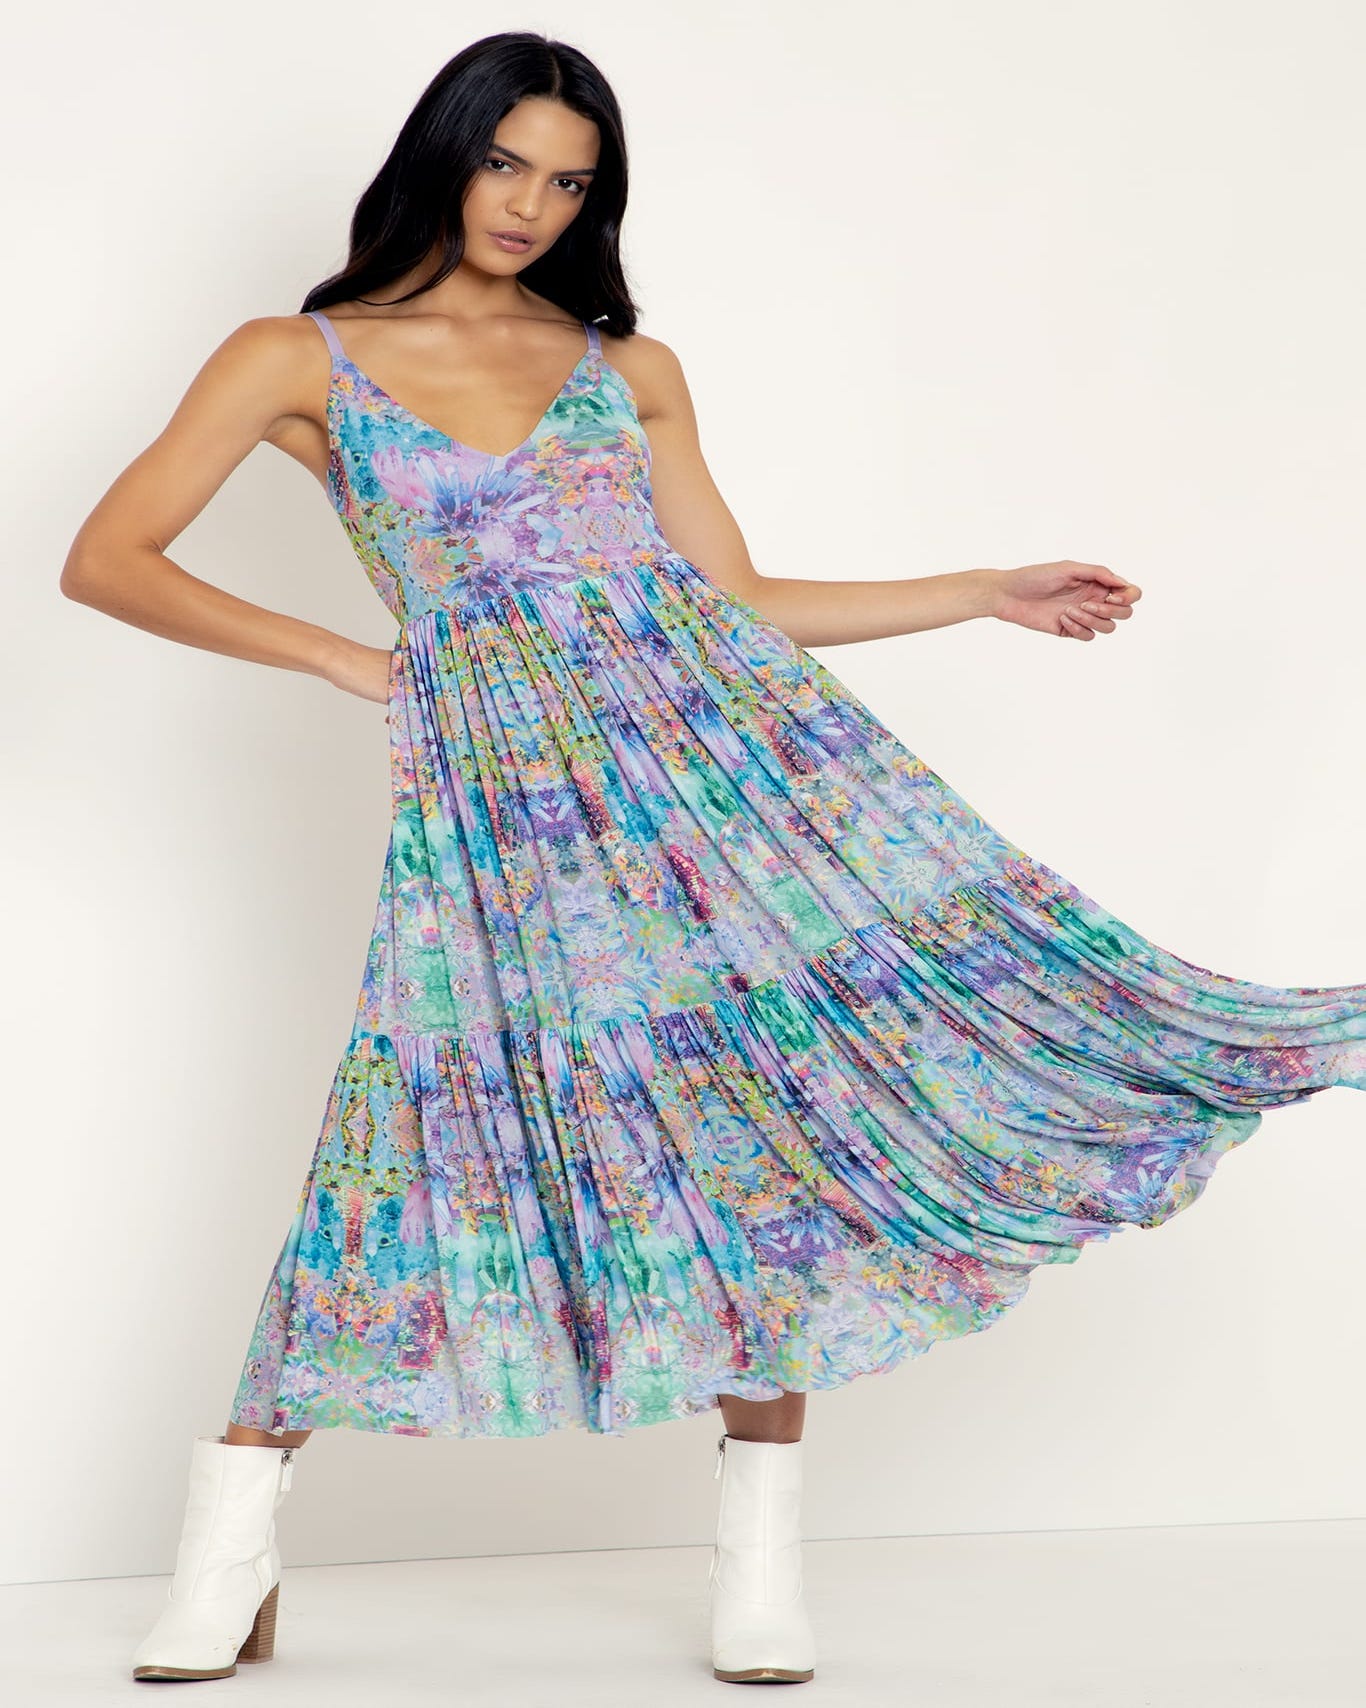 Crystal Magic Sheer Midaxi Dress - Limited